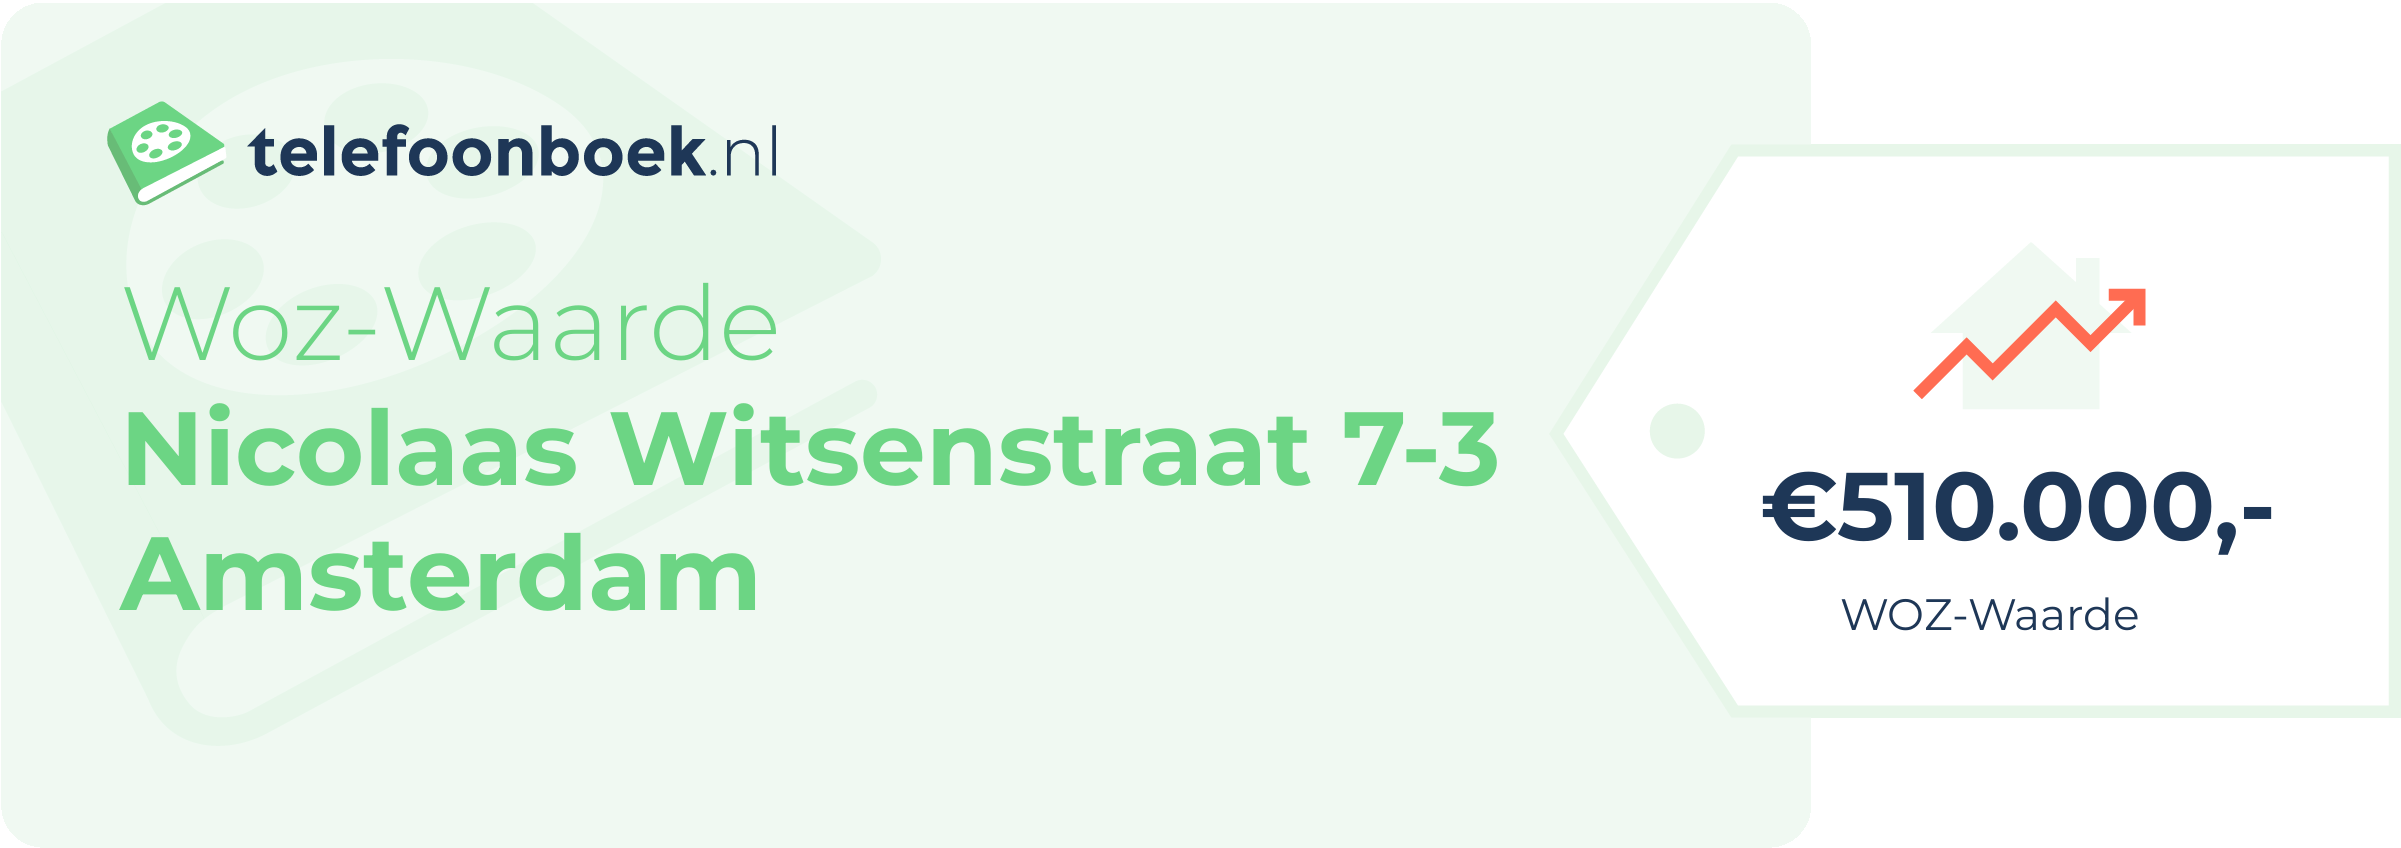 WOZ-waarde Nicolaas Witsenstraat 7-3 Amsterdam